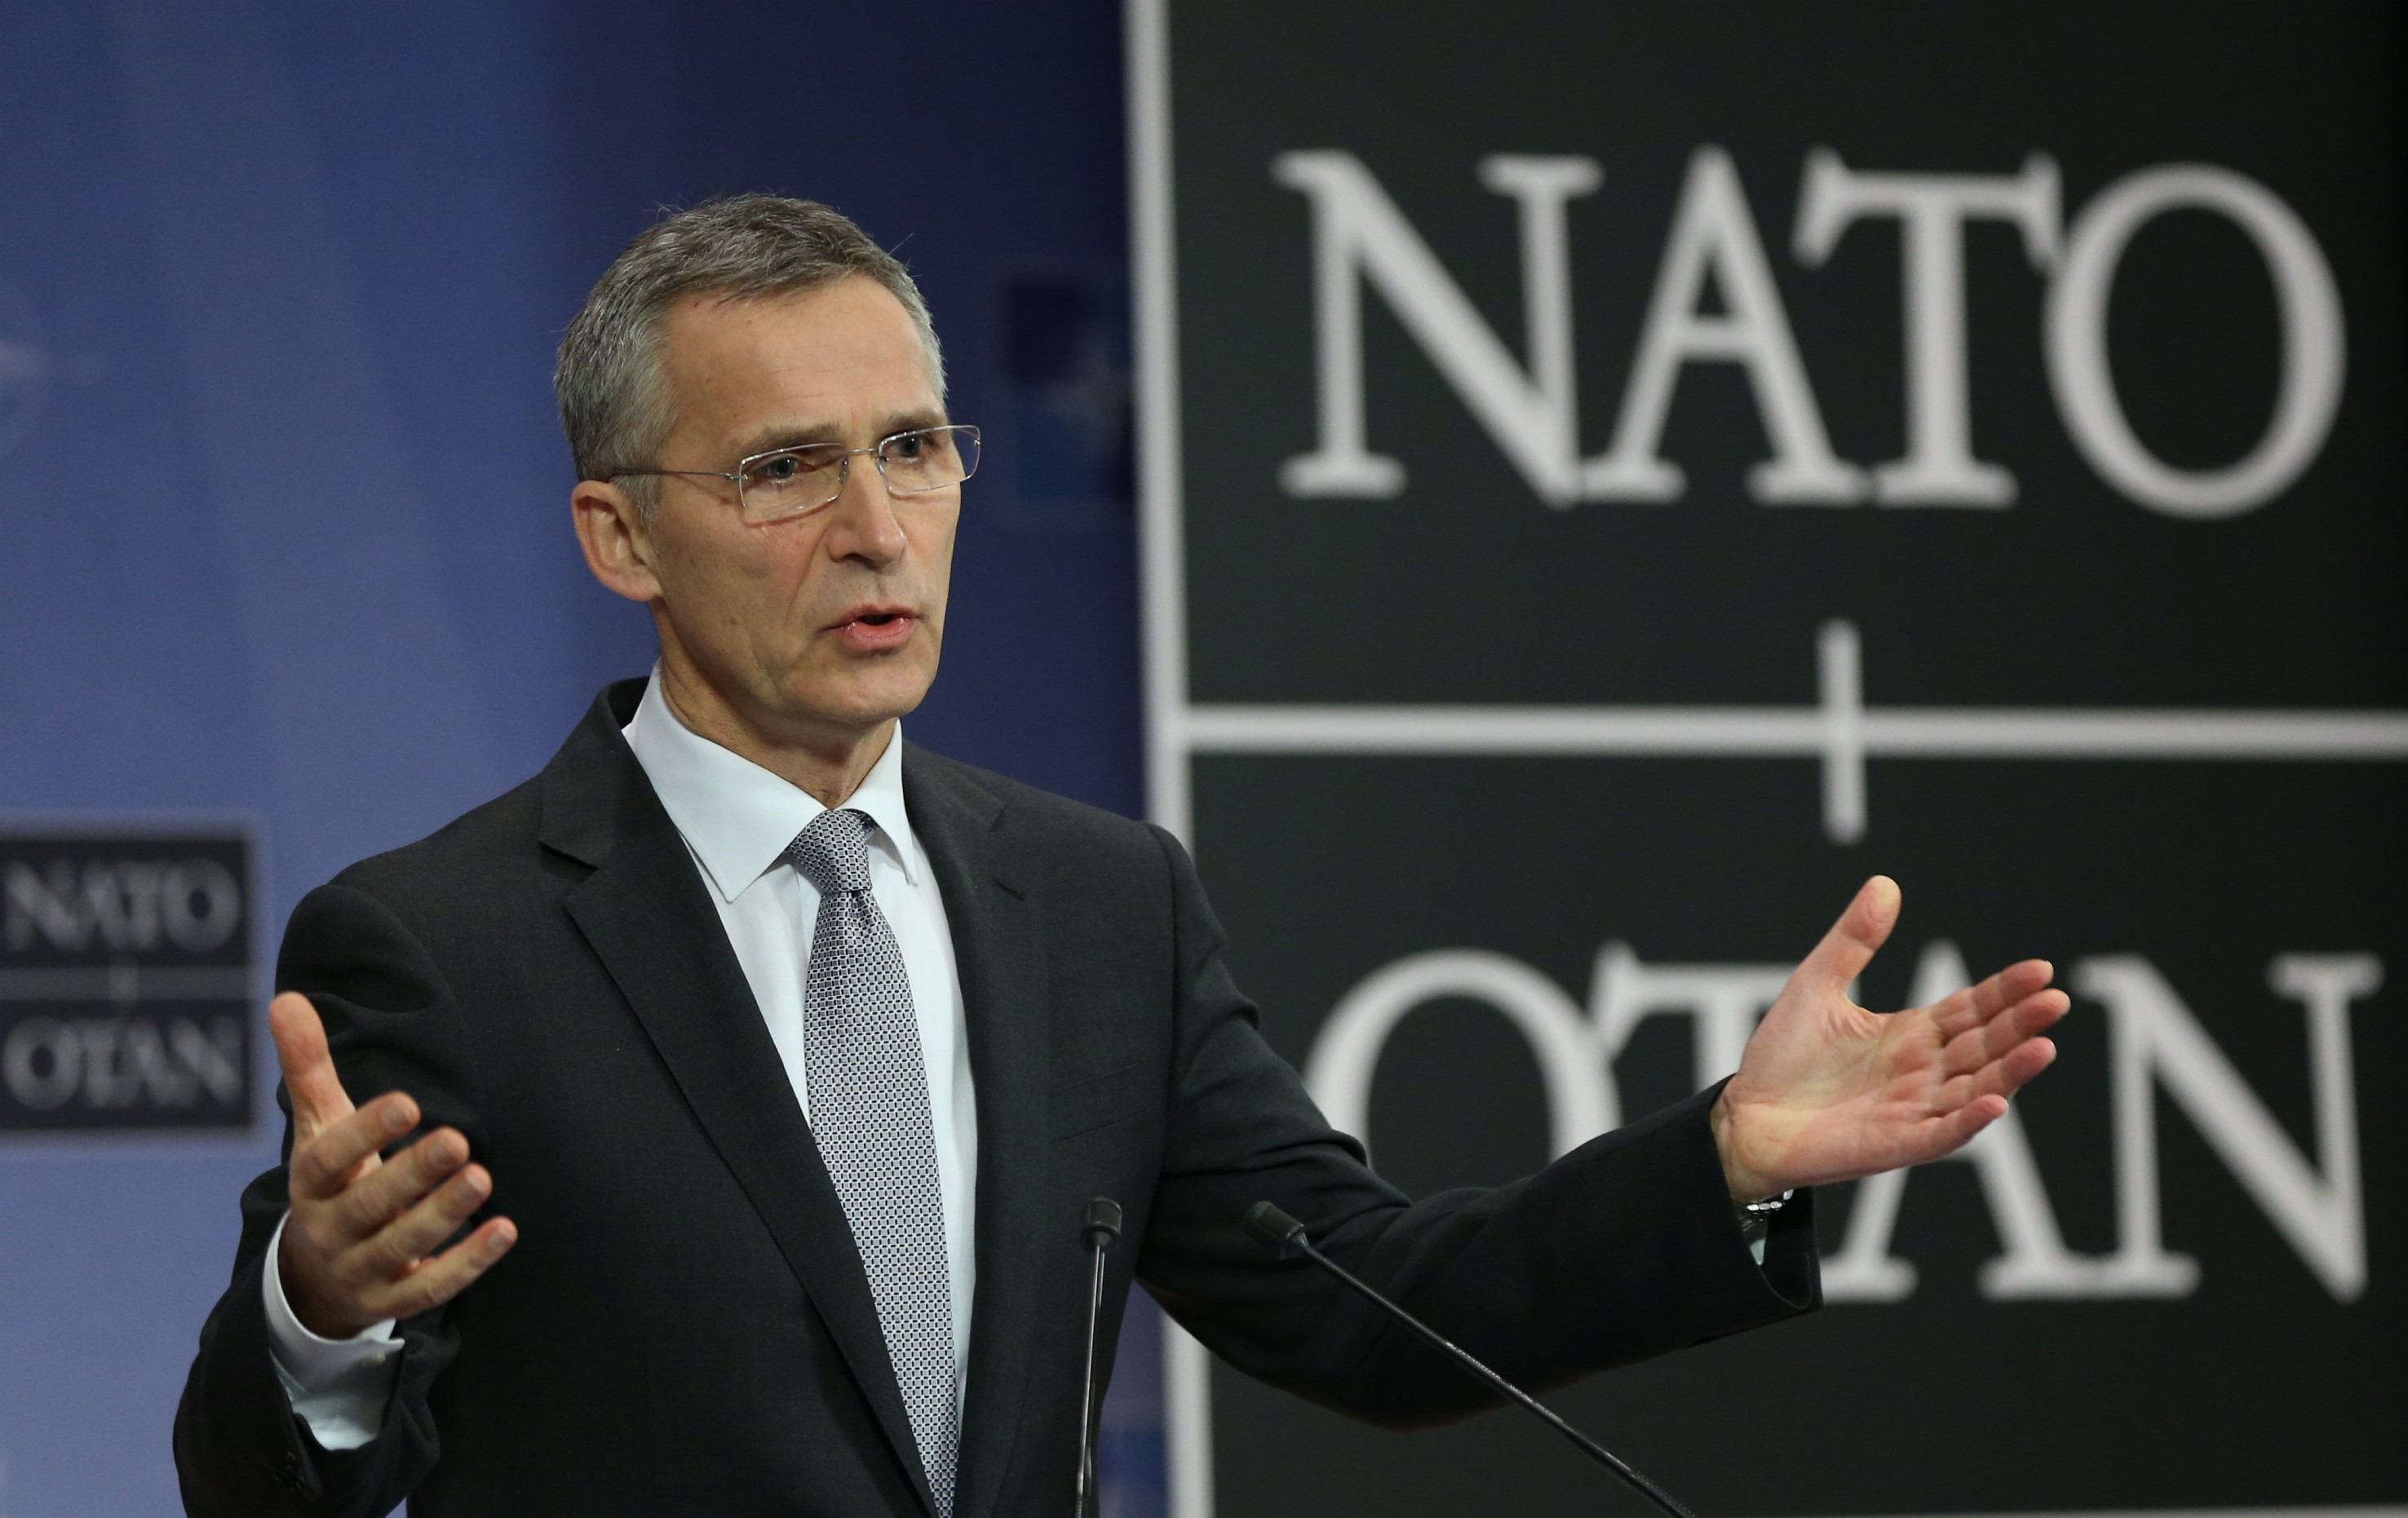 Când va adera Ucraina la NATO? Jens Stoltenberg: Integrarea se va produce când aliaţii vor fi de acord şi când Kievul va îndeplini condiţiile